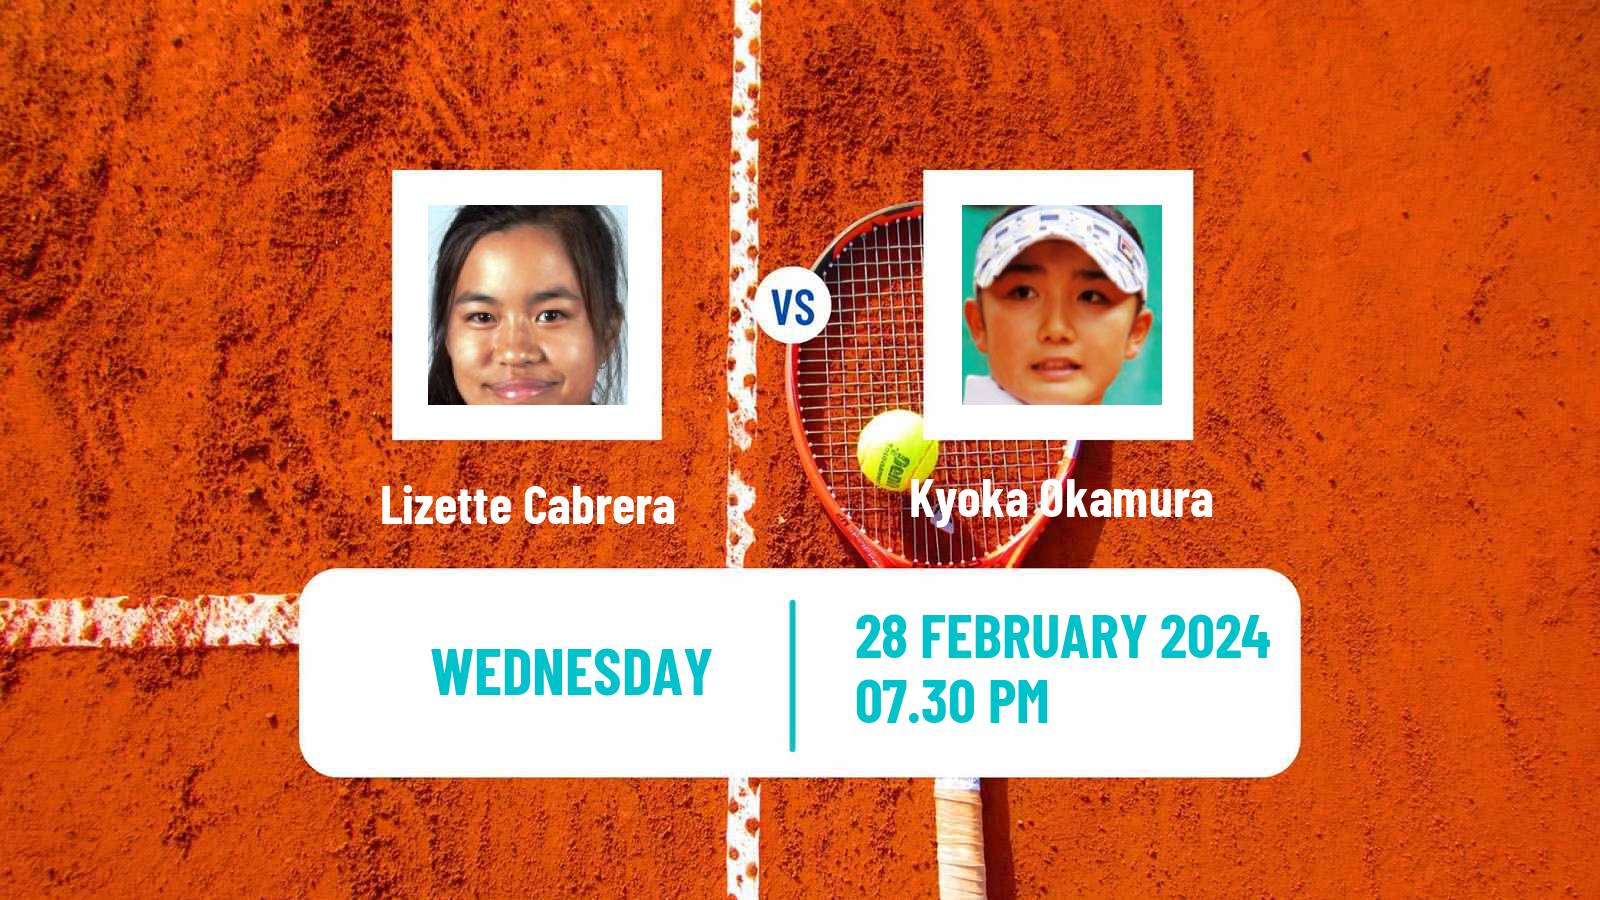 Tennis ITF W35 Traralgon 2 Women Lizette Cabrera - Kyoka Okamura